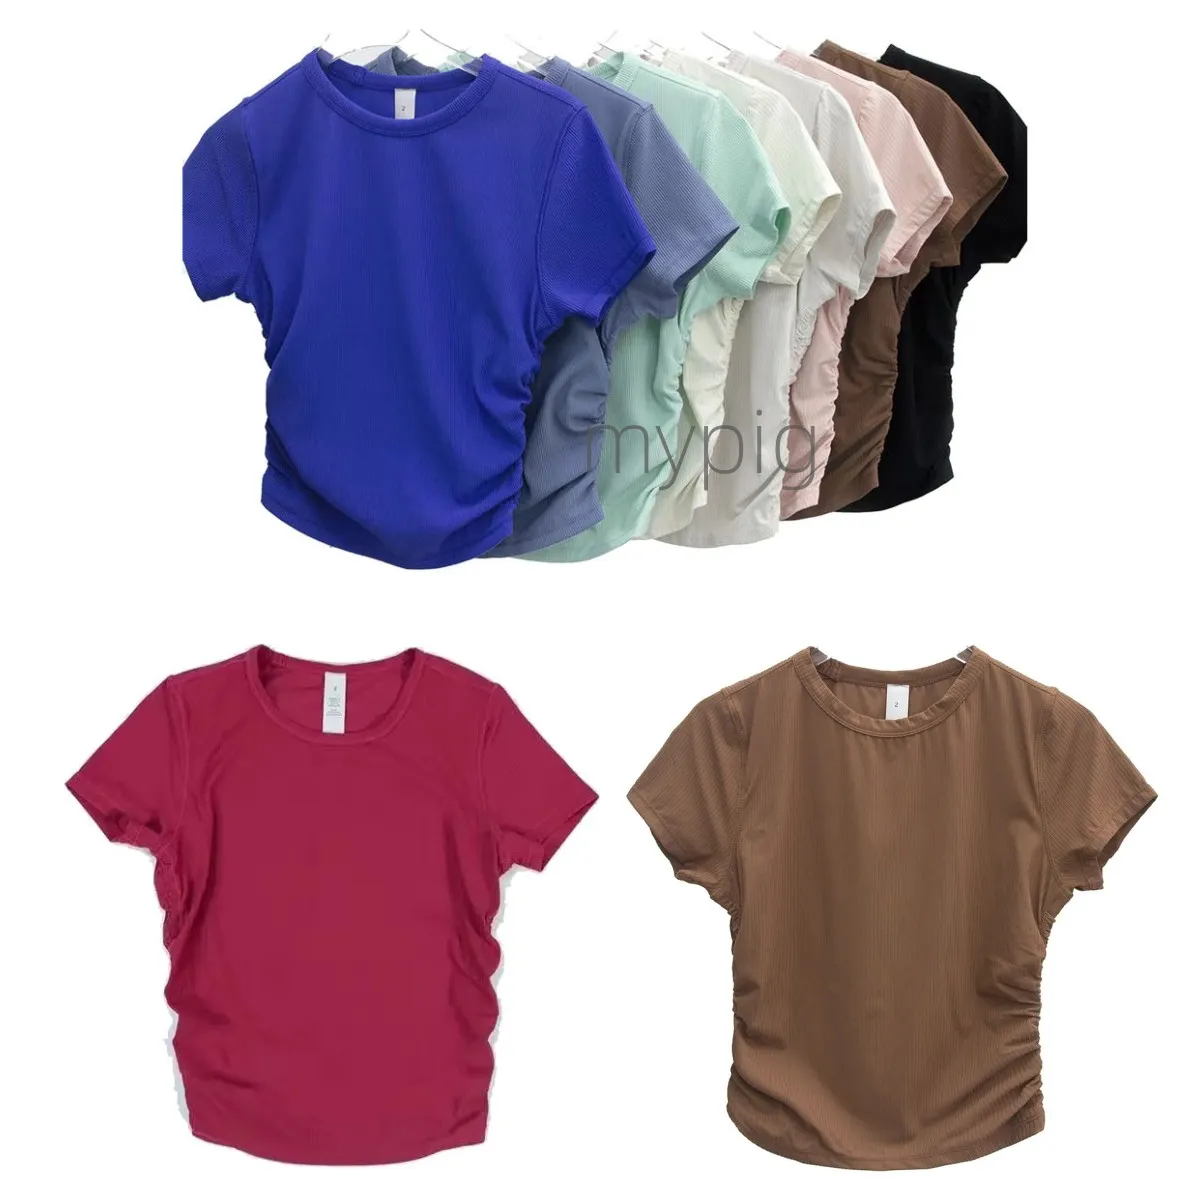 Camiseta de Yoga para mujer, ropa deportiva de manga corta ajustada de secado rápido con hilo expuesto para el ombligo, ropa deportiva de entrenamiento